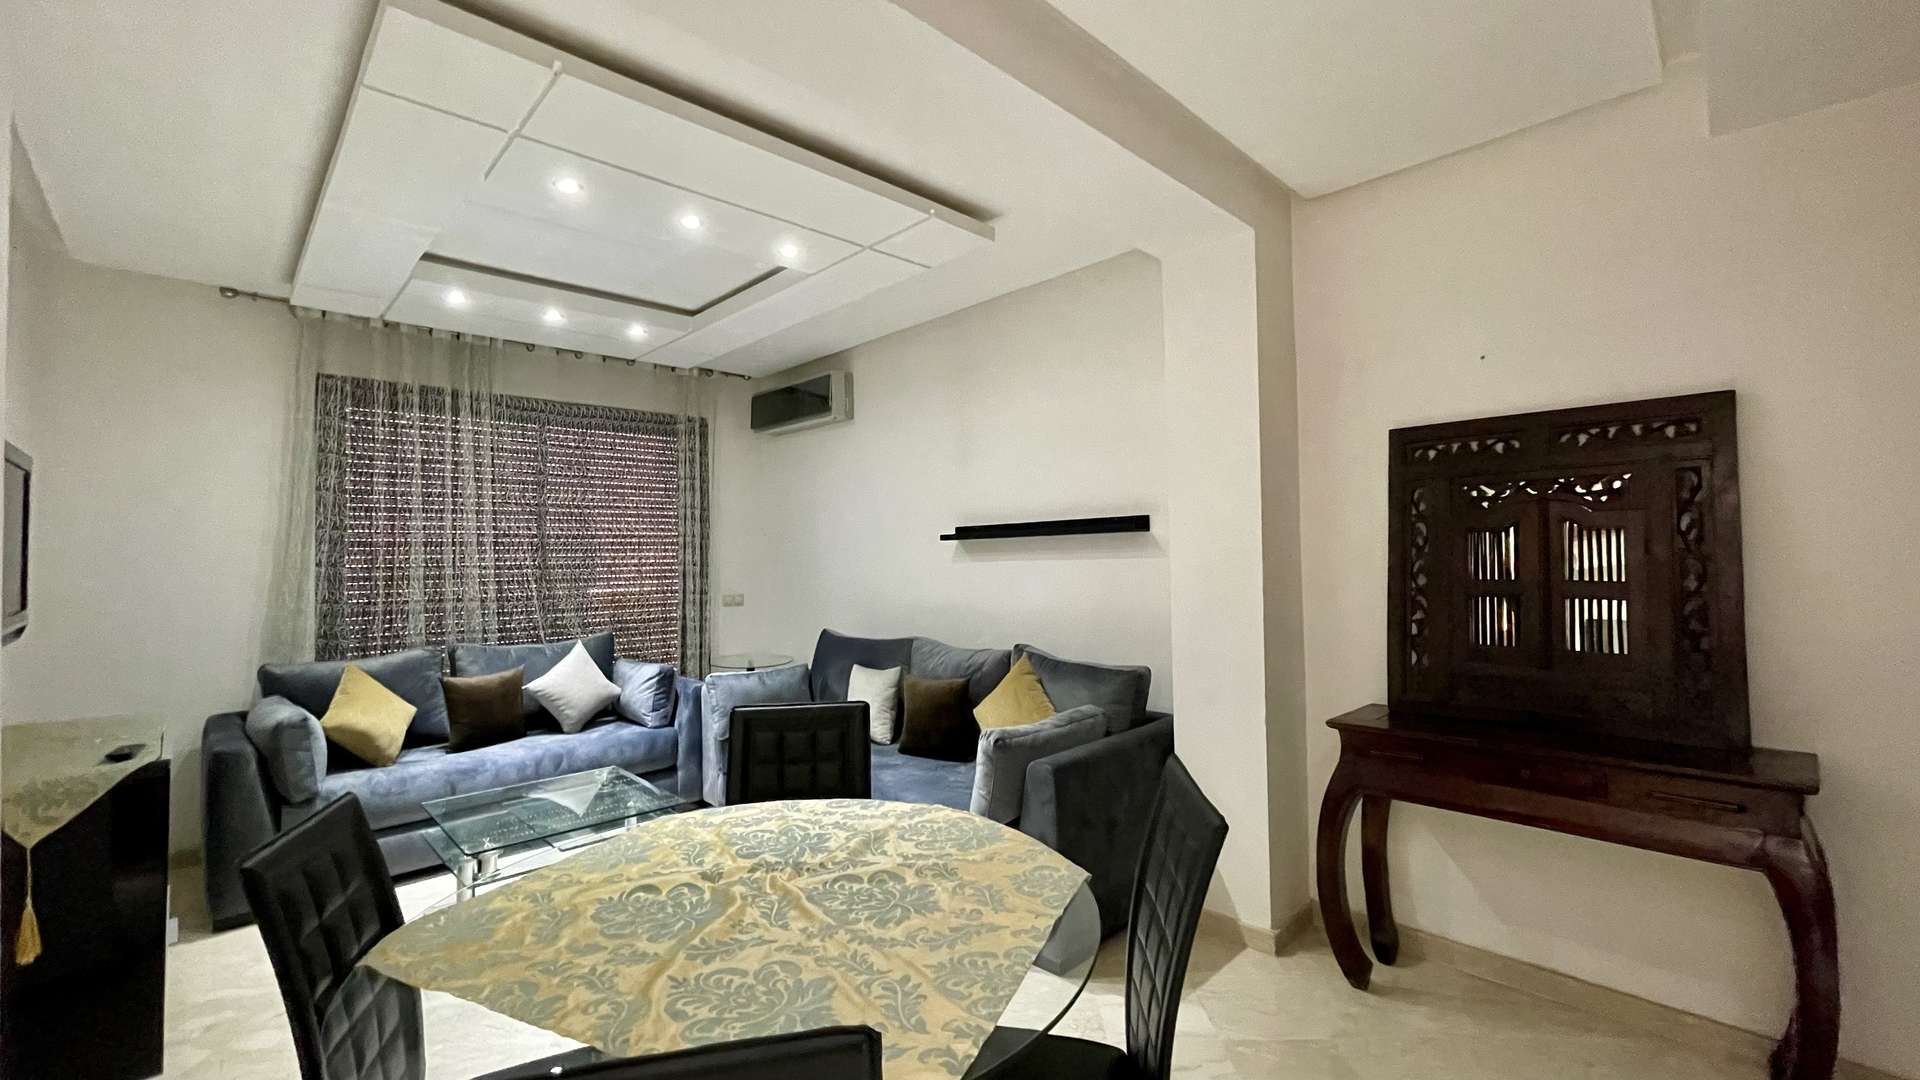 Location longue durée ,Appartement,Magnifique Studio 1 ch. Salon dernier étage avec Terrasse. Résidence avec piscine Guéliz Marrakech,Marrakech,Guéliz